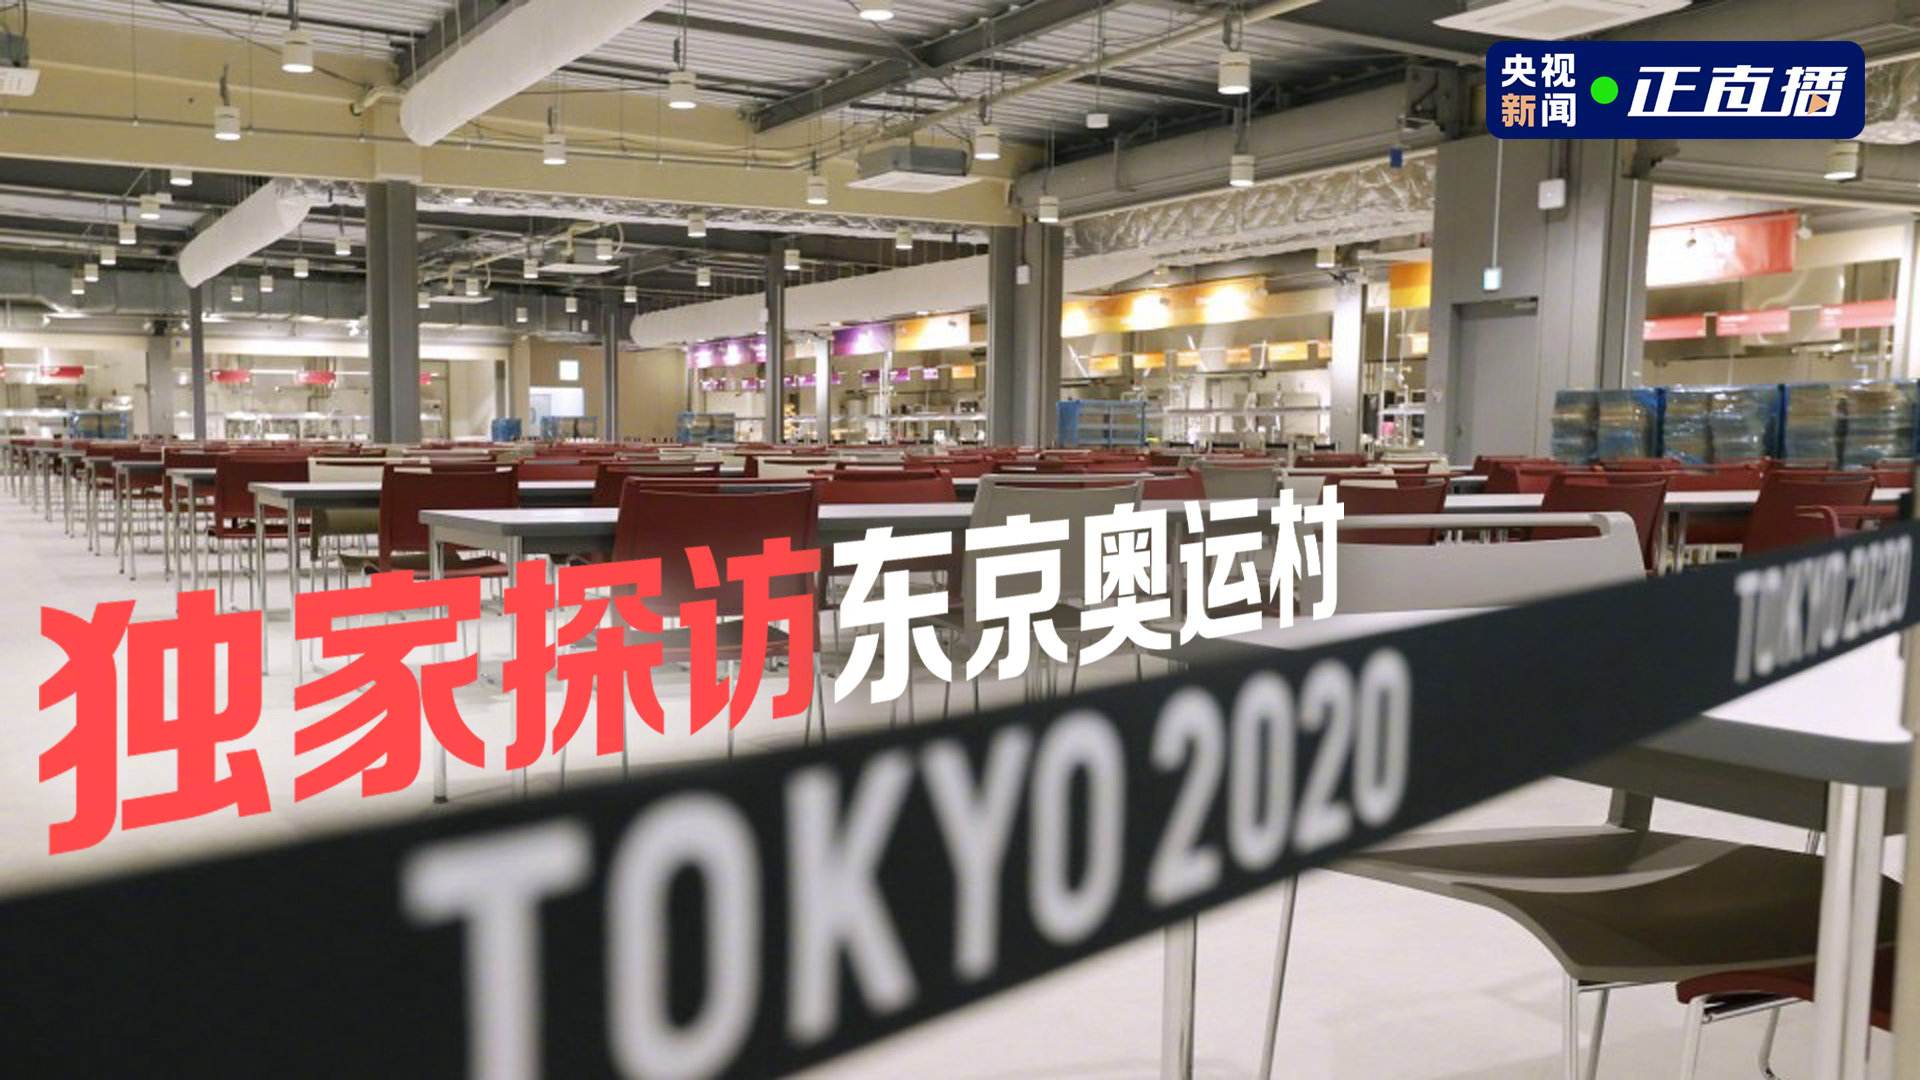 包含2021东京奥运会闭幕式时间的词条